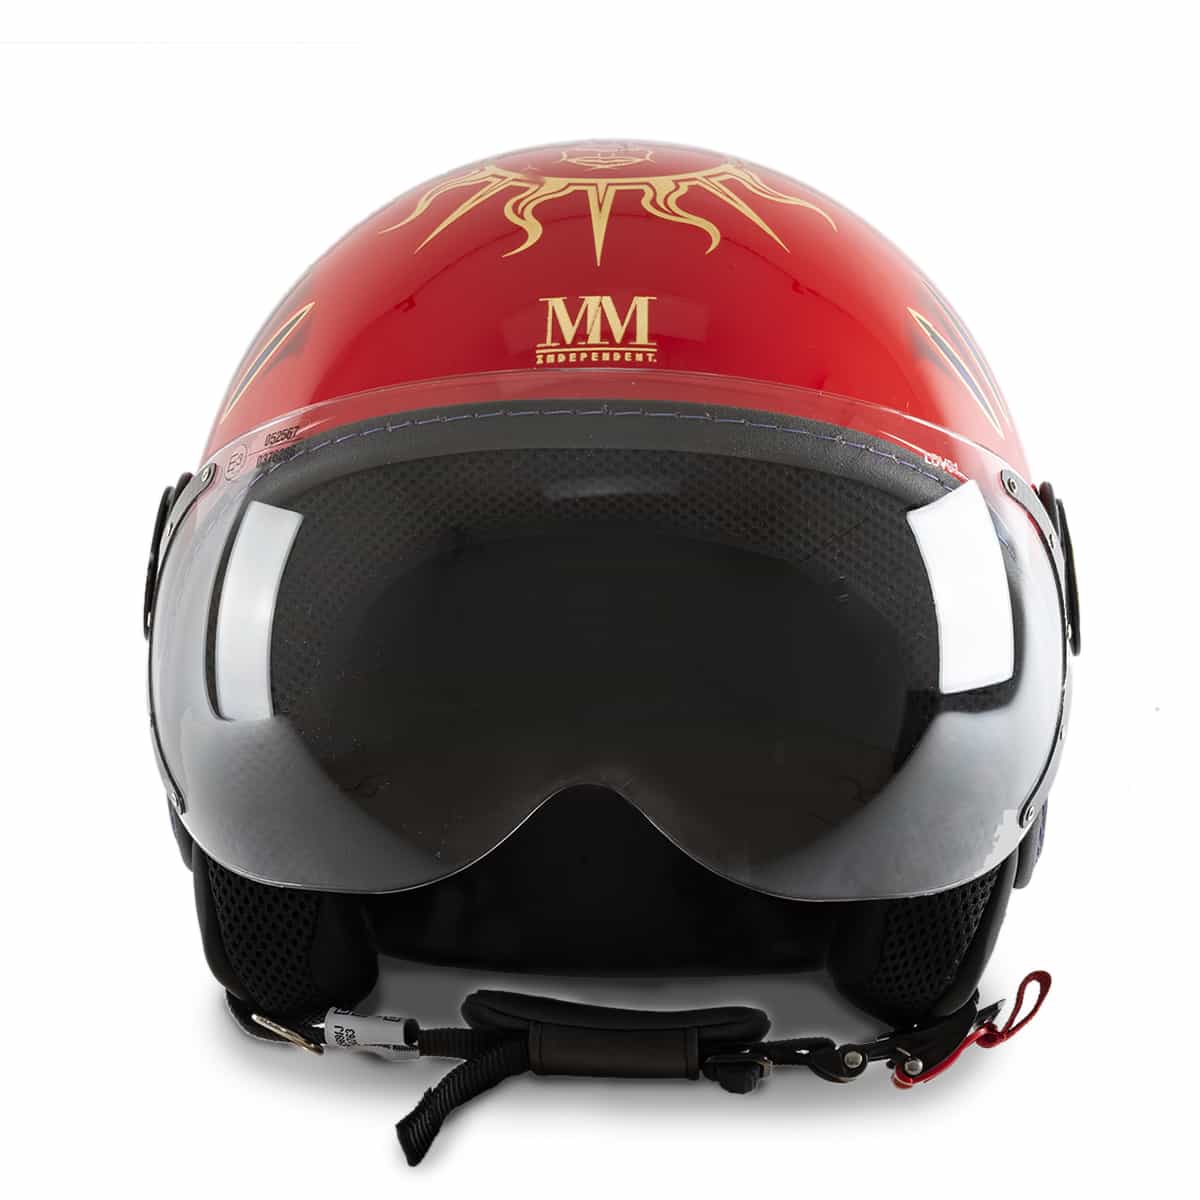 Rossi helmet front view